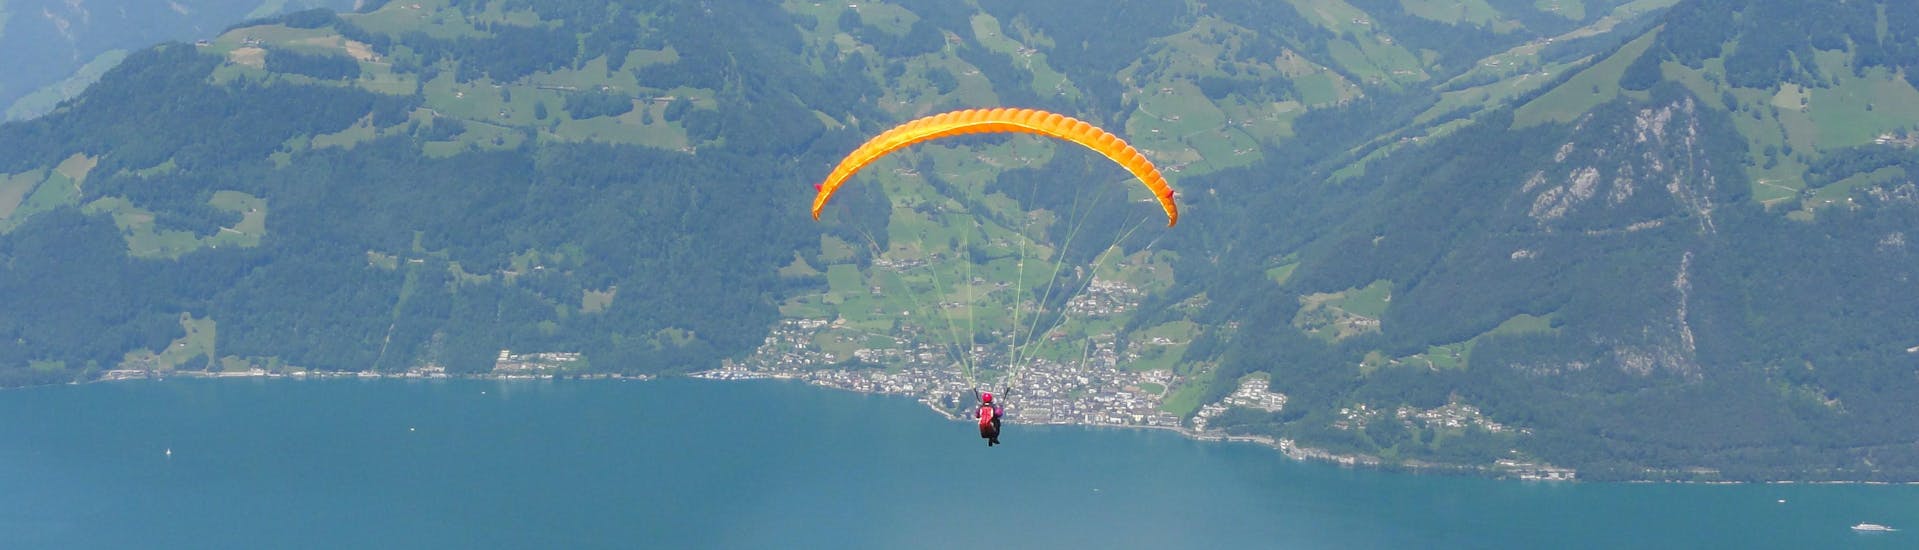 Eigenthal-Luzern: Een tandemvlucht vindt plaats in een van de hotspots voor paragliding.